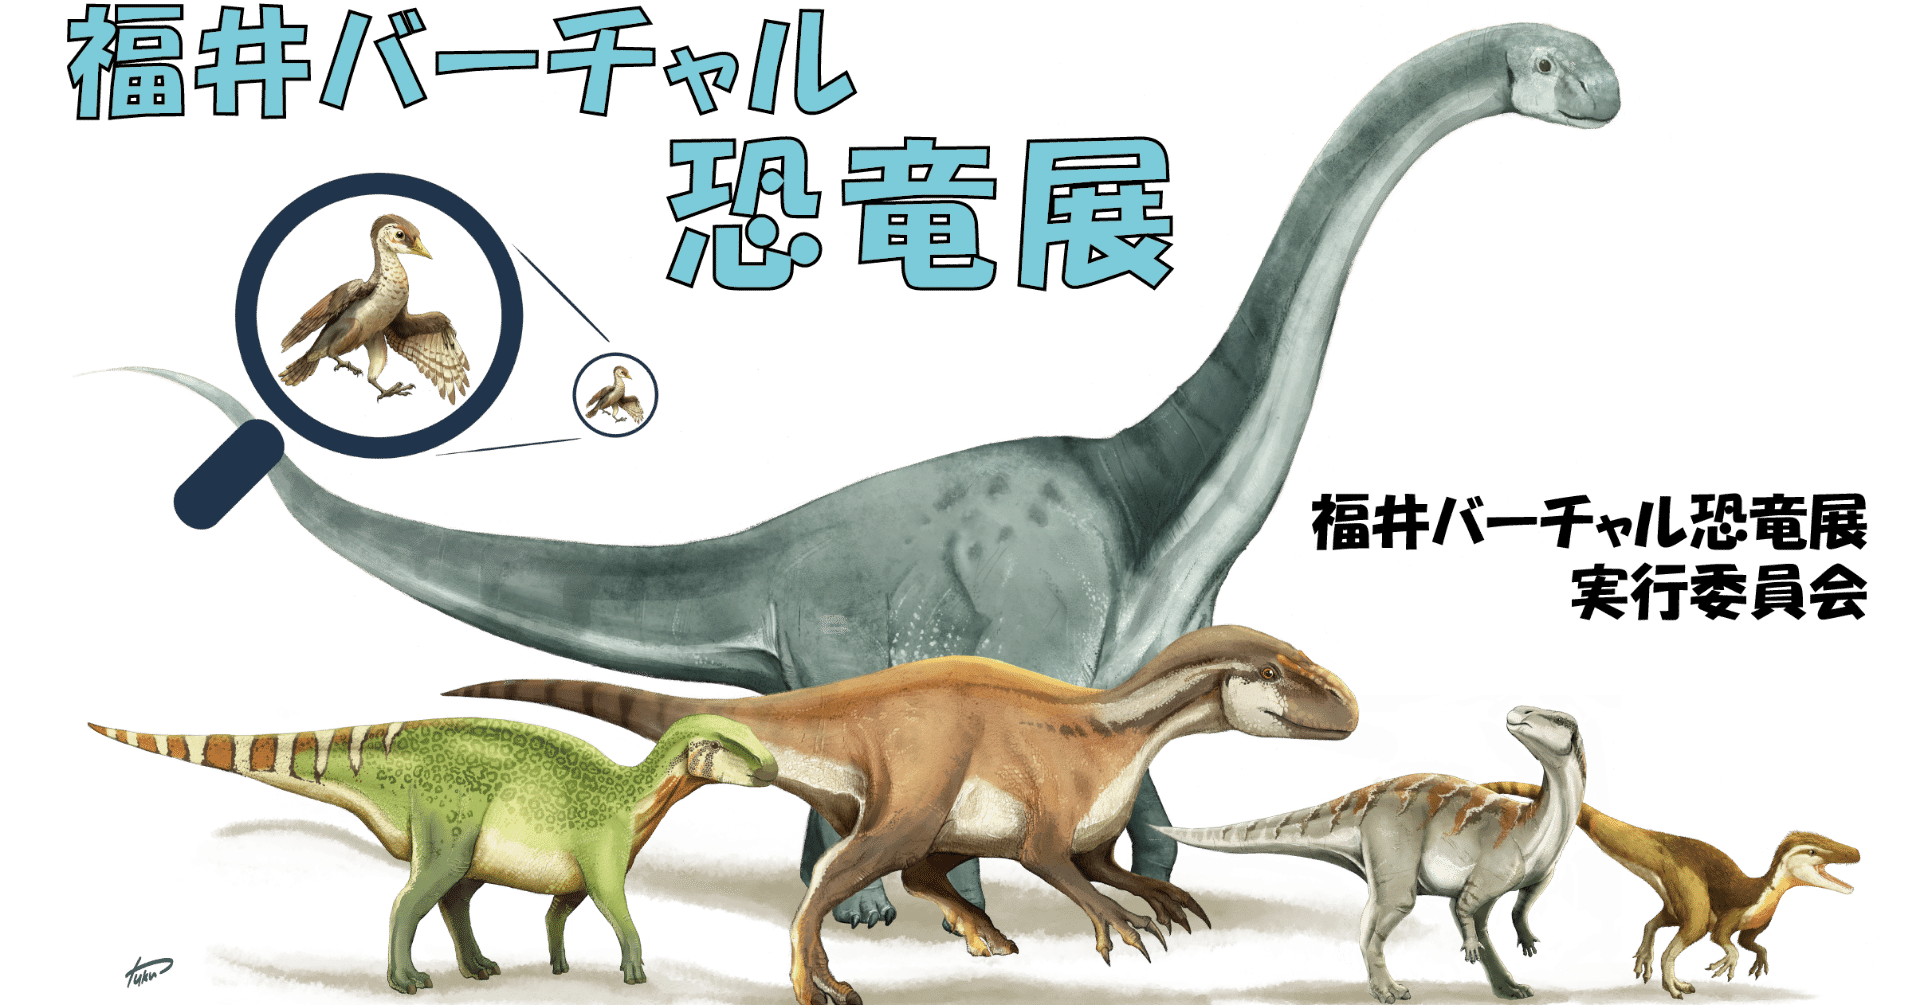 福井バーチャル恐竜展クラウドファンディング 今井拓哉 恐竜学研究所 Dinotech Lab Note